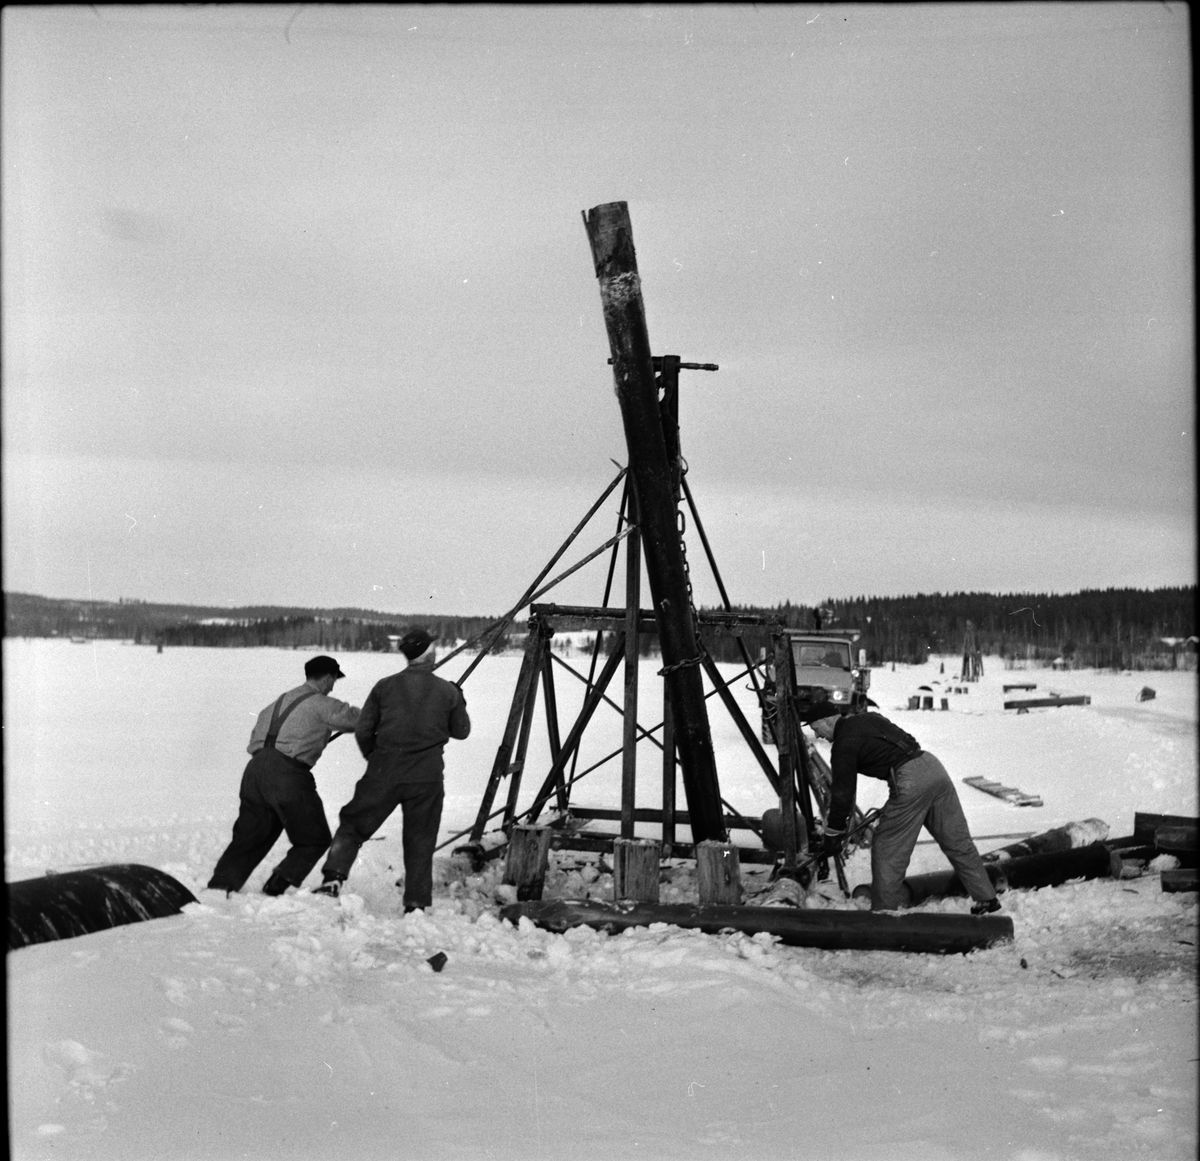 Arbrå,
Rensning av Kyrksjön,
20 Februari 1968